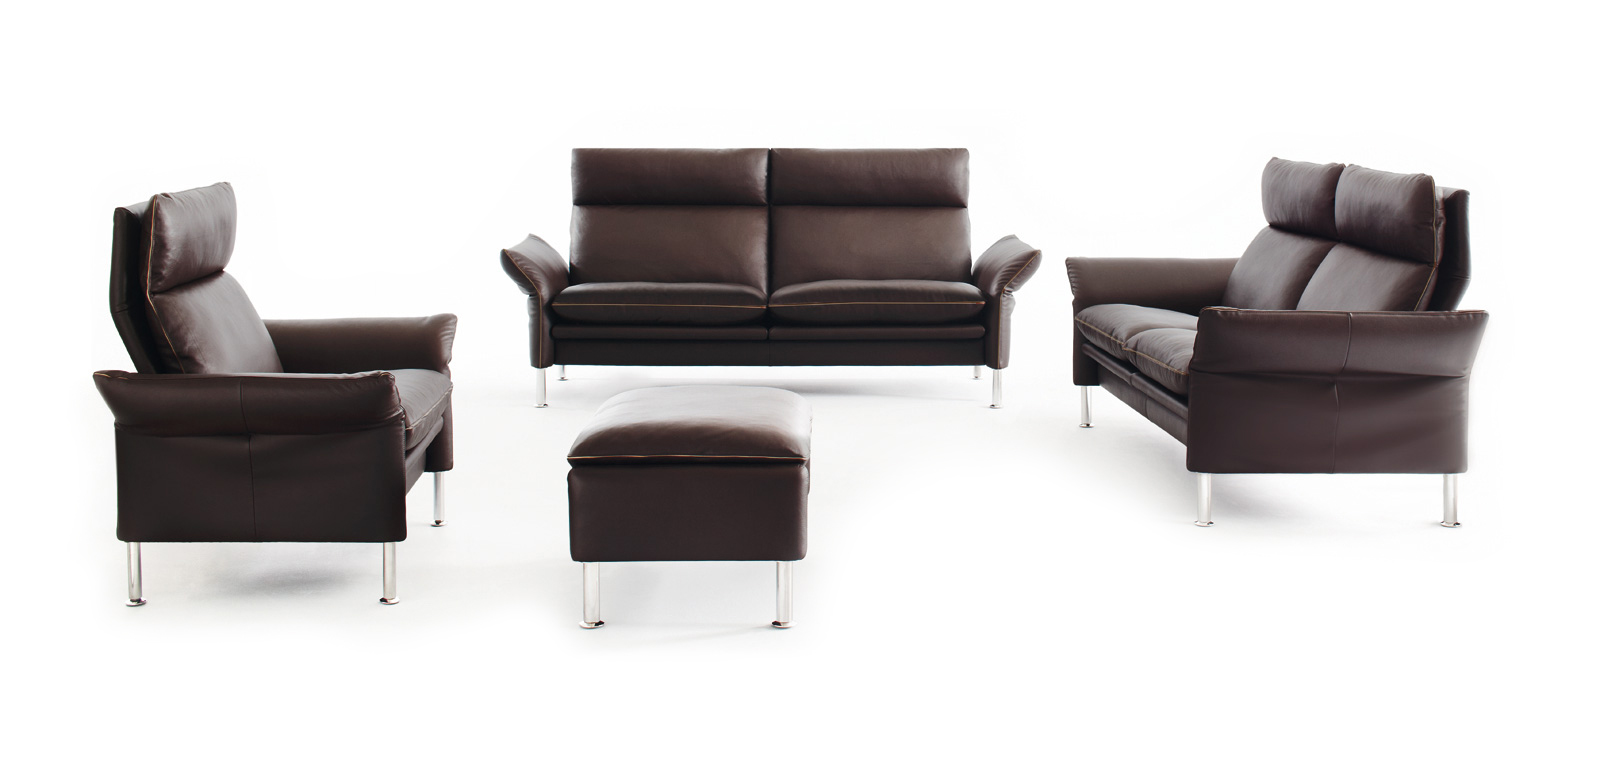 Freigestellte Porto Sitzgruppe aus zwei Sofas, Sessel und Hocker in dunkelbraunem Leder.